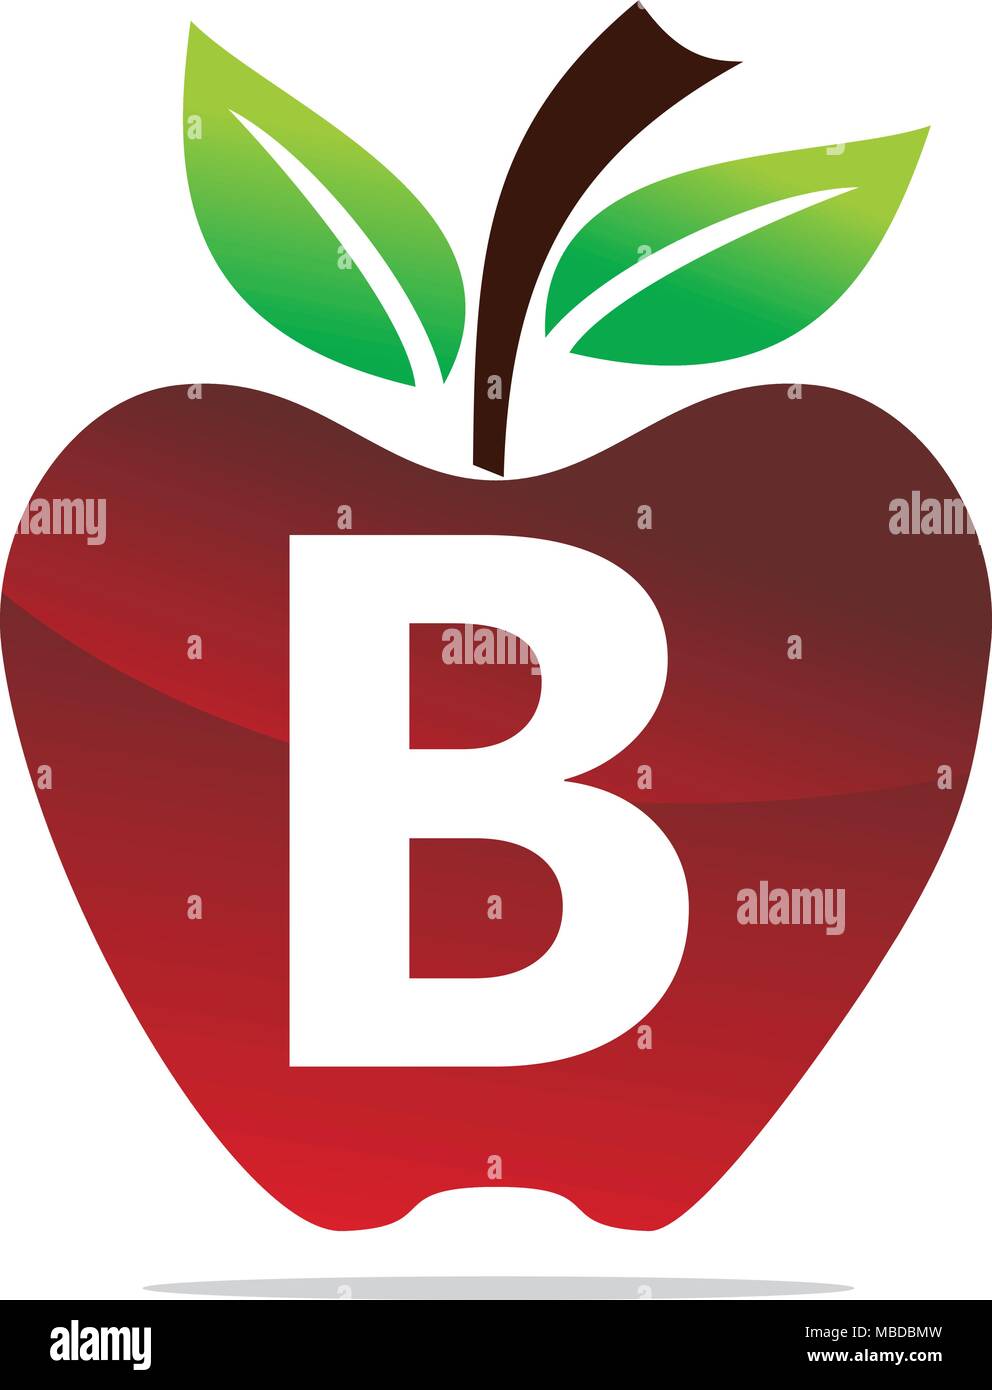 Apple letter B Logo Design Template Vector Stock Vector